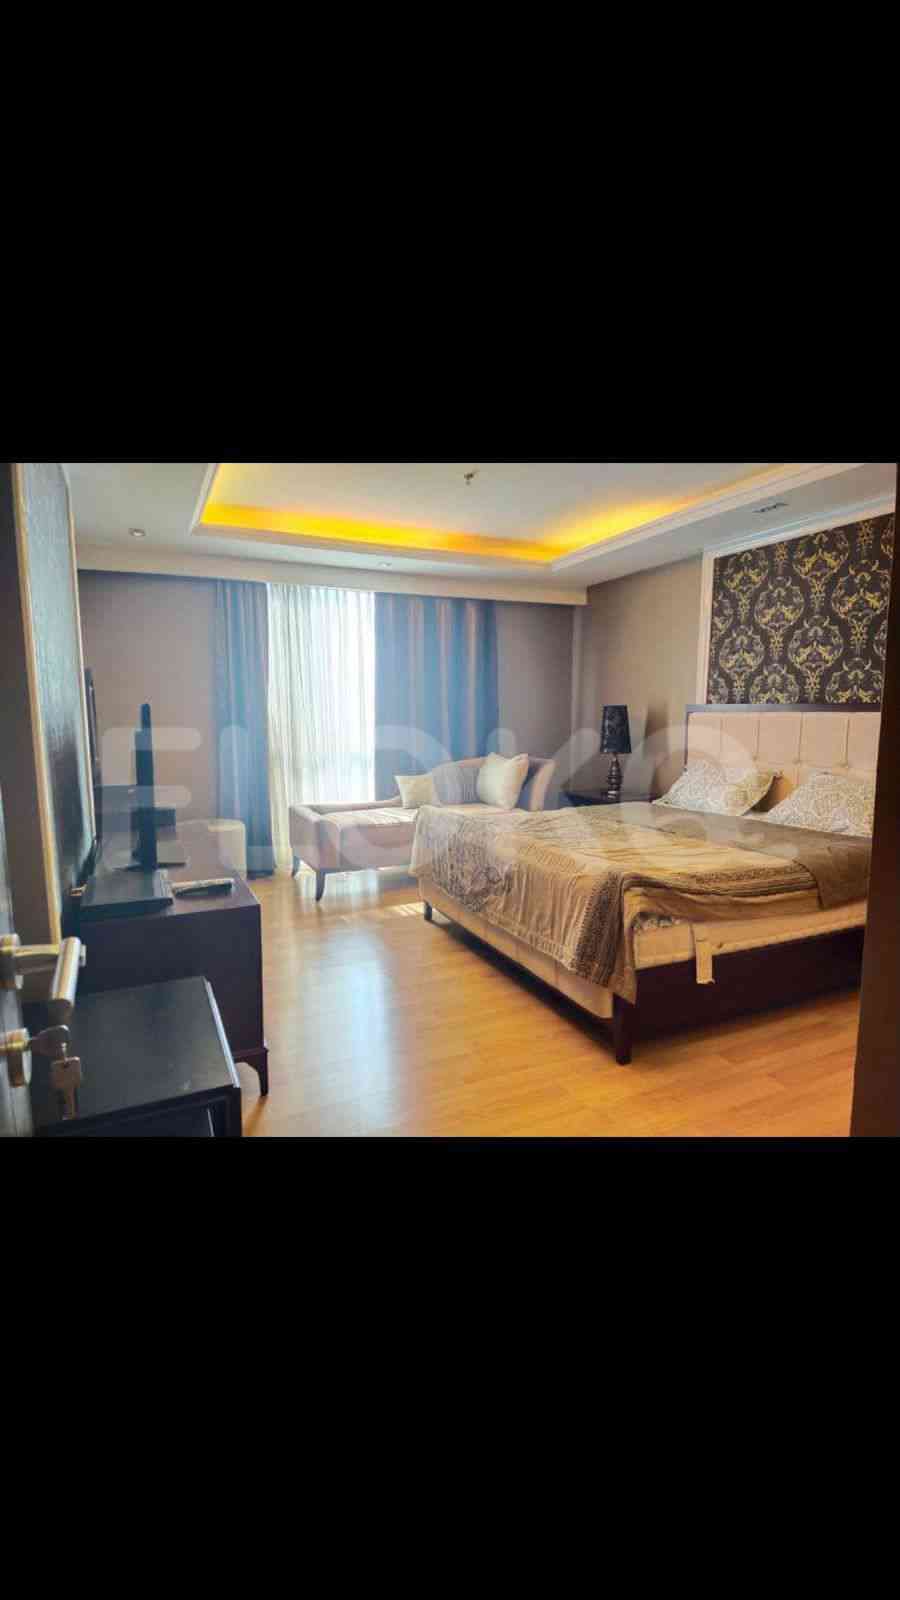 3 Bedroom on 16th Floor for Rent in Casa Grande - fte5dc 1